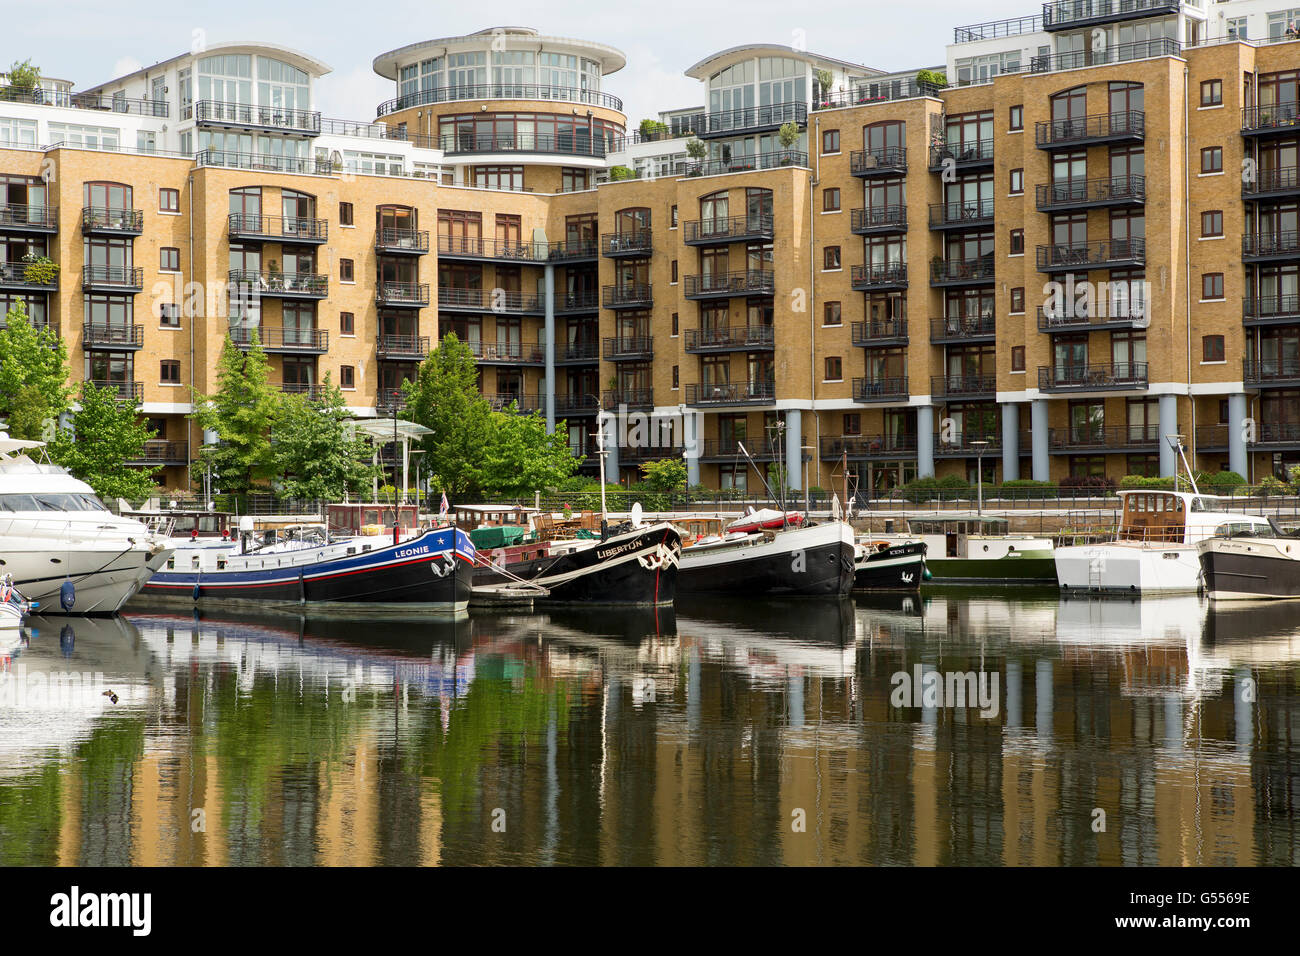 Blick auf St. Katherine dock Marina in Tower Hamlets London. Einmal eine kommerzielle Dock jetzt Heimat am Wasser Häuser und Restaurants. Stockfoto